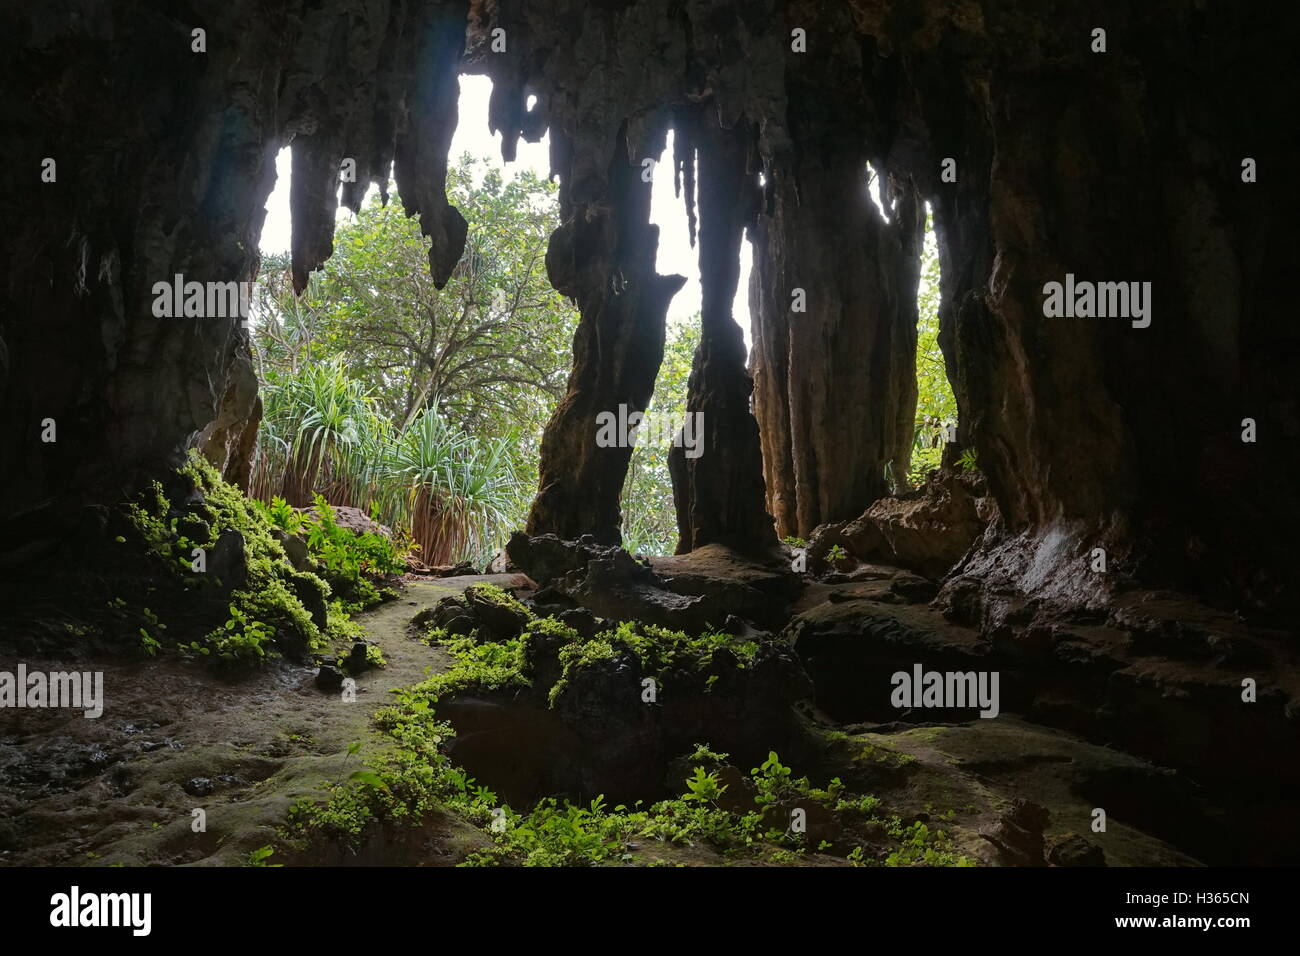 La sortie de la caverne avec des stalactites et stalagmites, vues de l'intérieur, Rurutu austal, île du Pacifique Sud, la Polynésie Française Banque D'Images